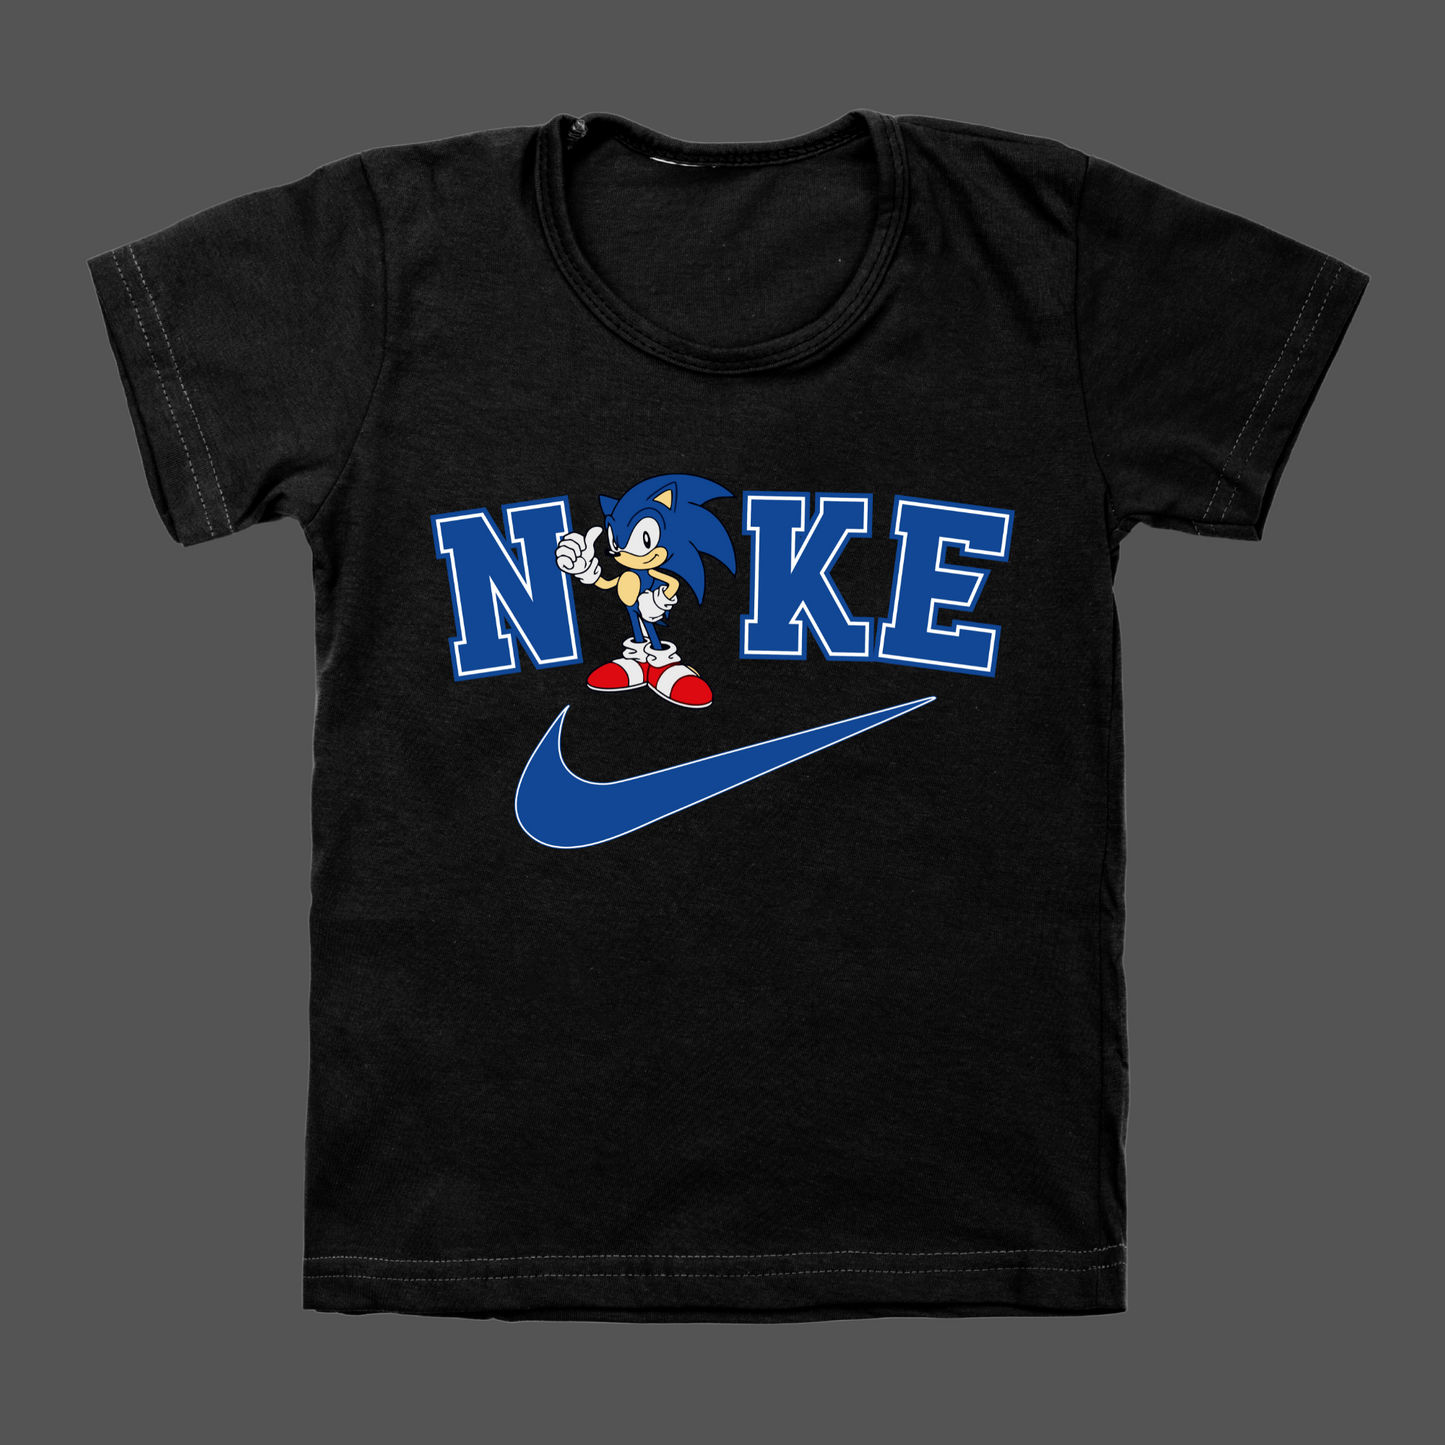 Sonic Nike transfer